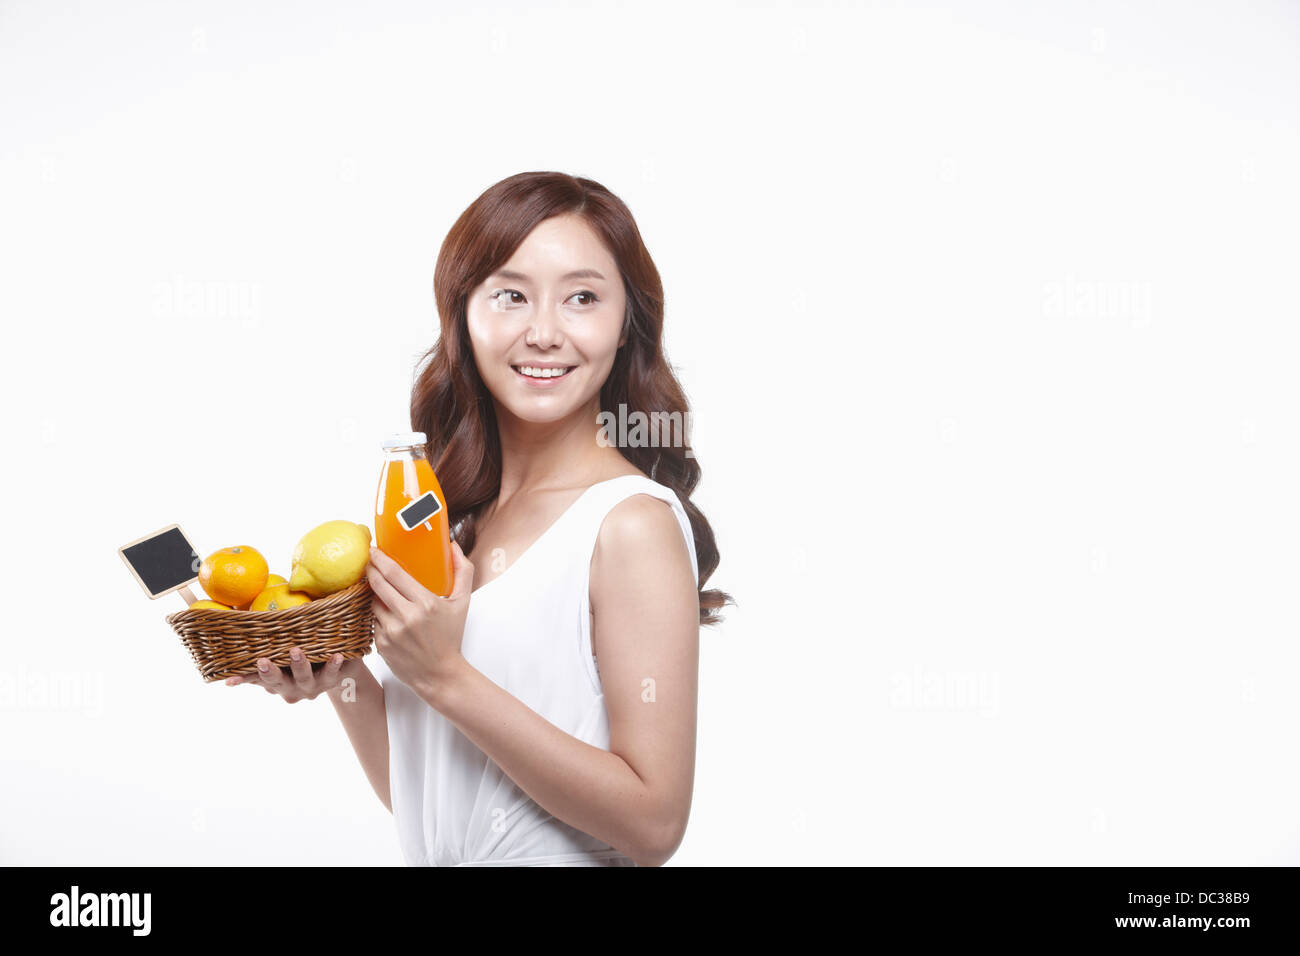 Une dame en robe blanche tenant un panier de fruits et une bouteille de jus Banque D'Images